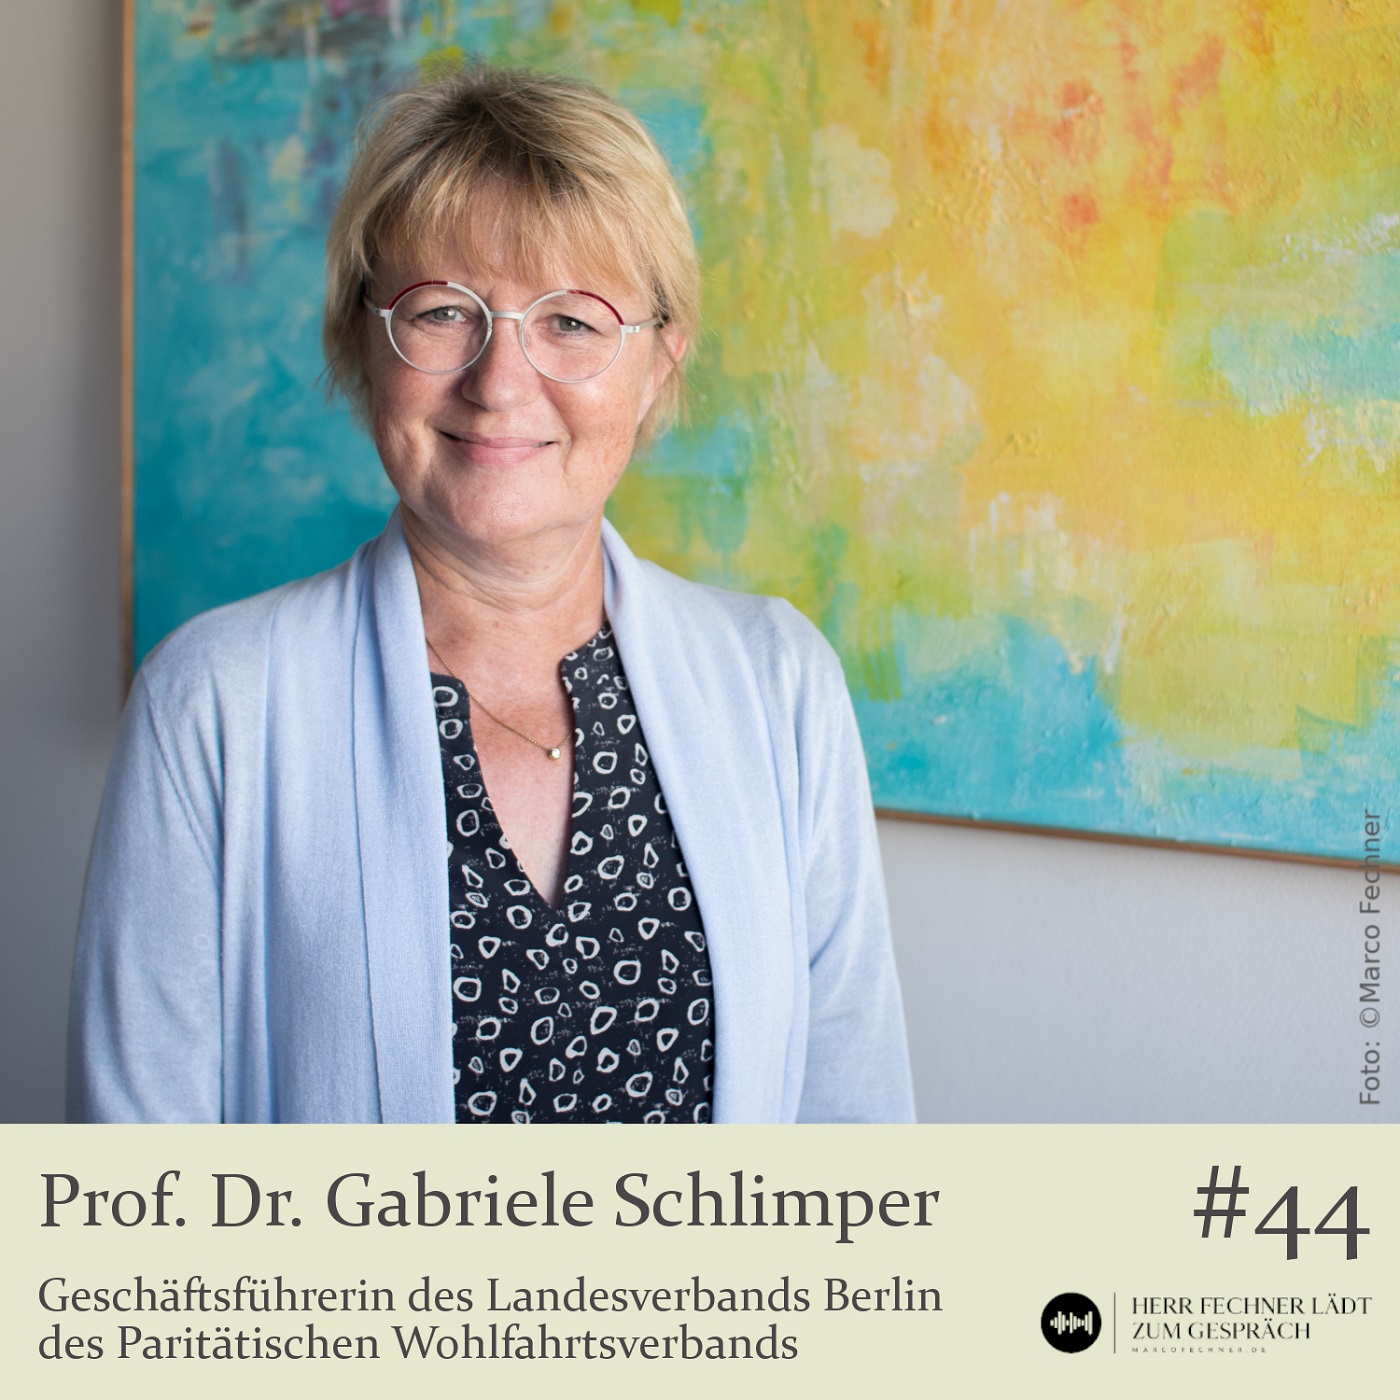 Prof. Dr. Gabriele Schlimper, Geschäftsführerin Paritätischer Wohlfahrtsverband, Landesverband Berlin